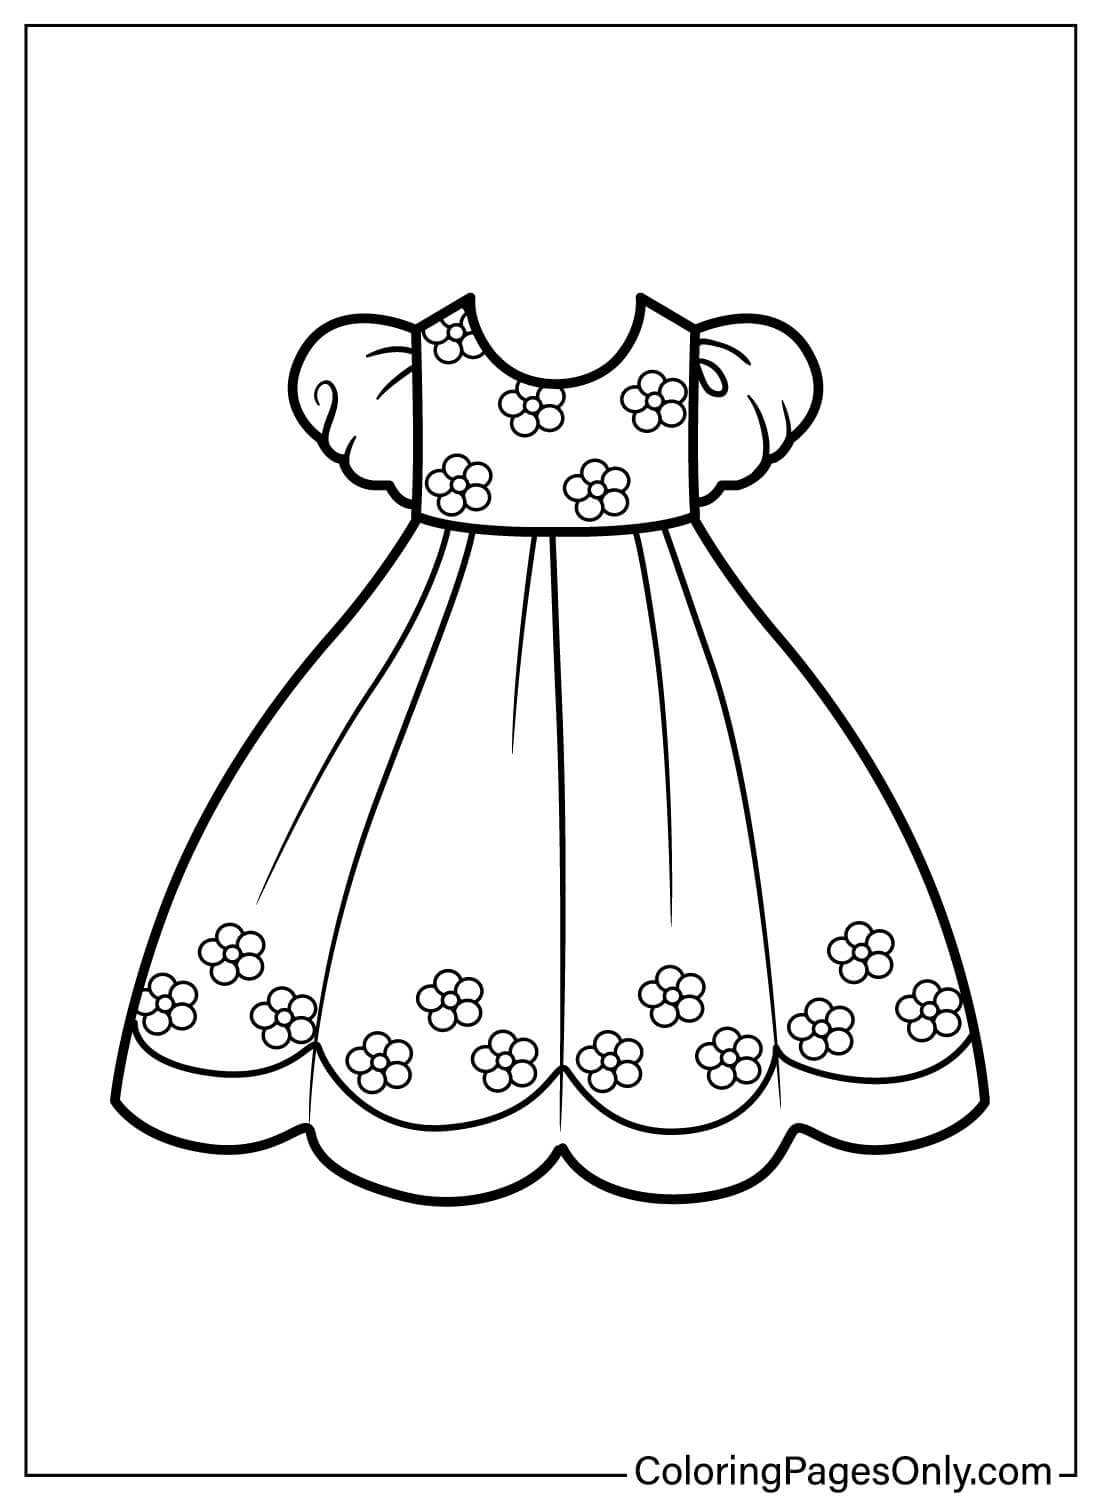 صفحة ألوان فستان الطفل من Baby Dress